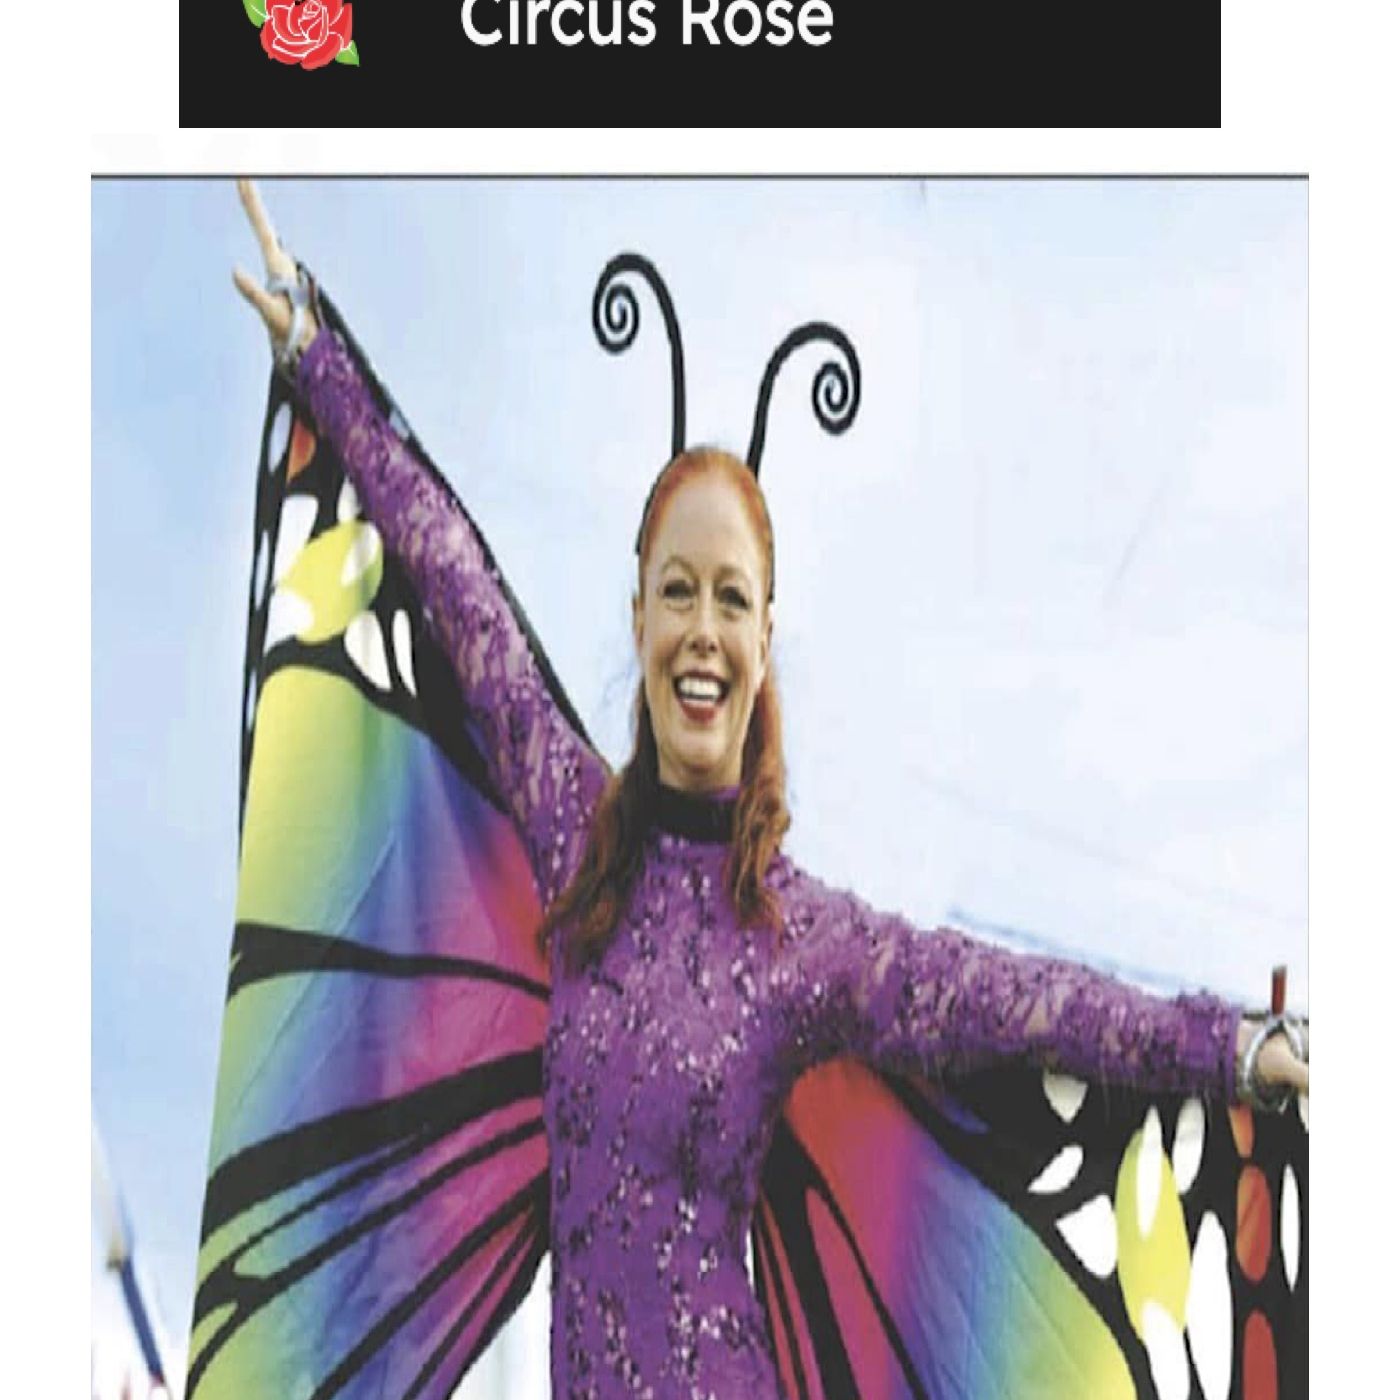 Circus Rose - Diana Rose